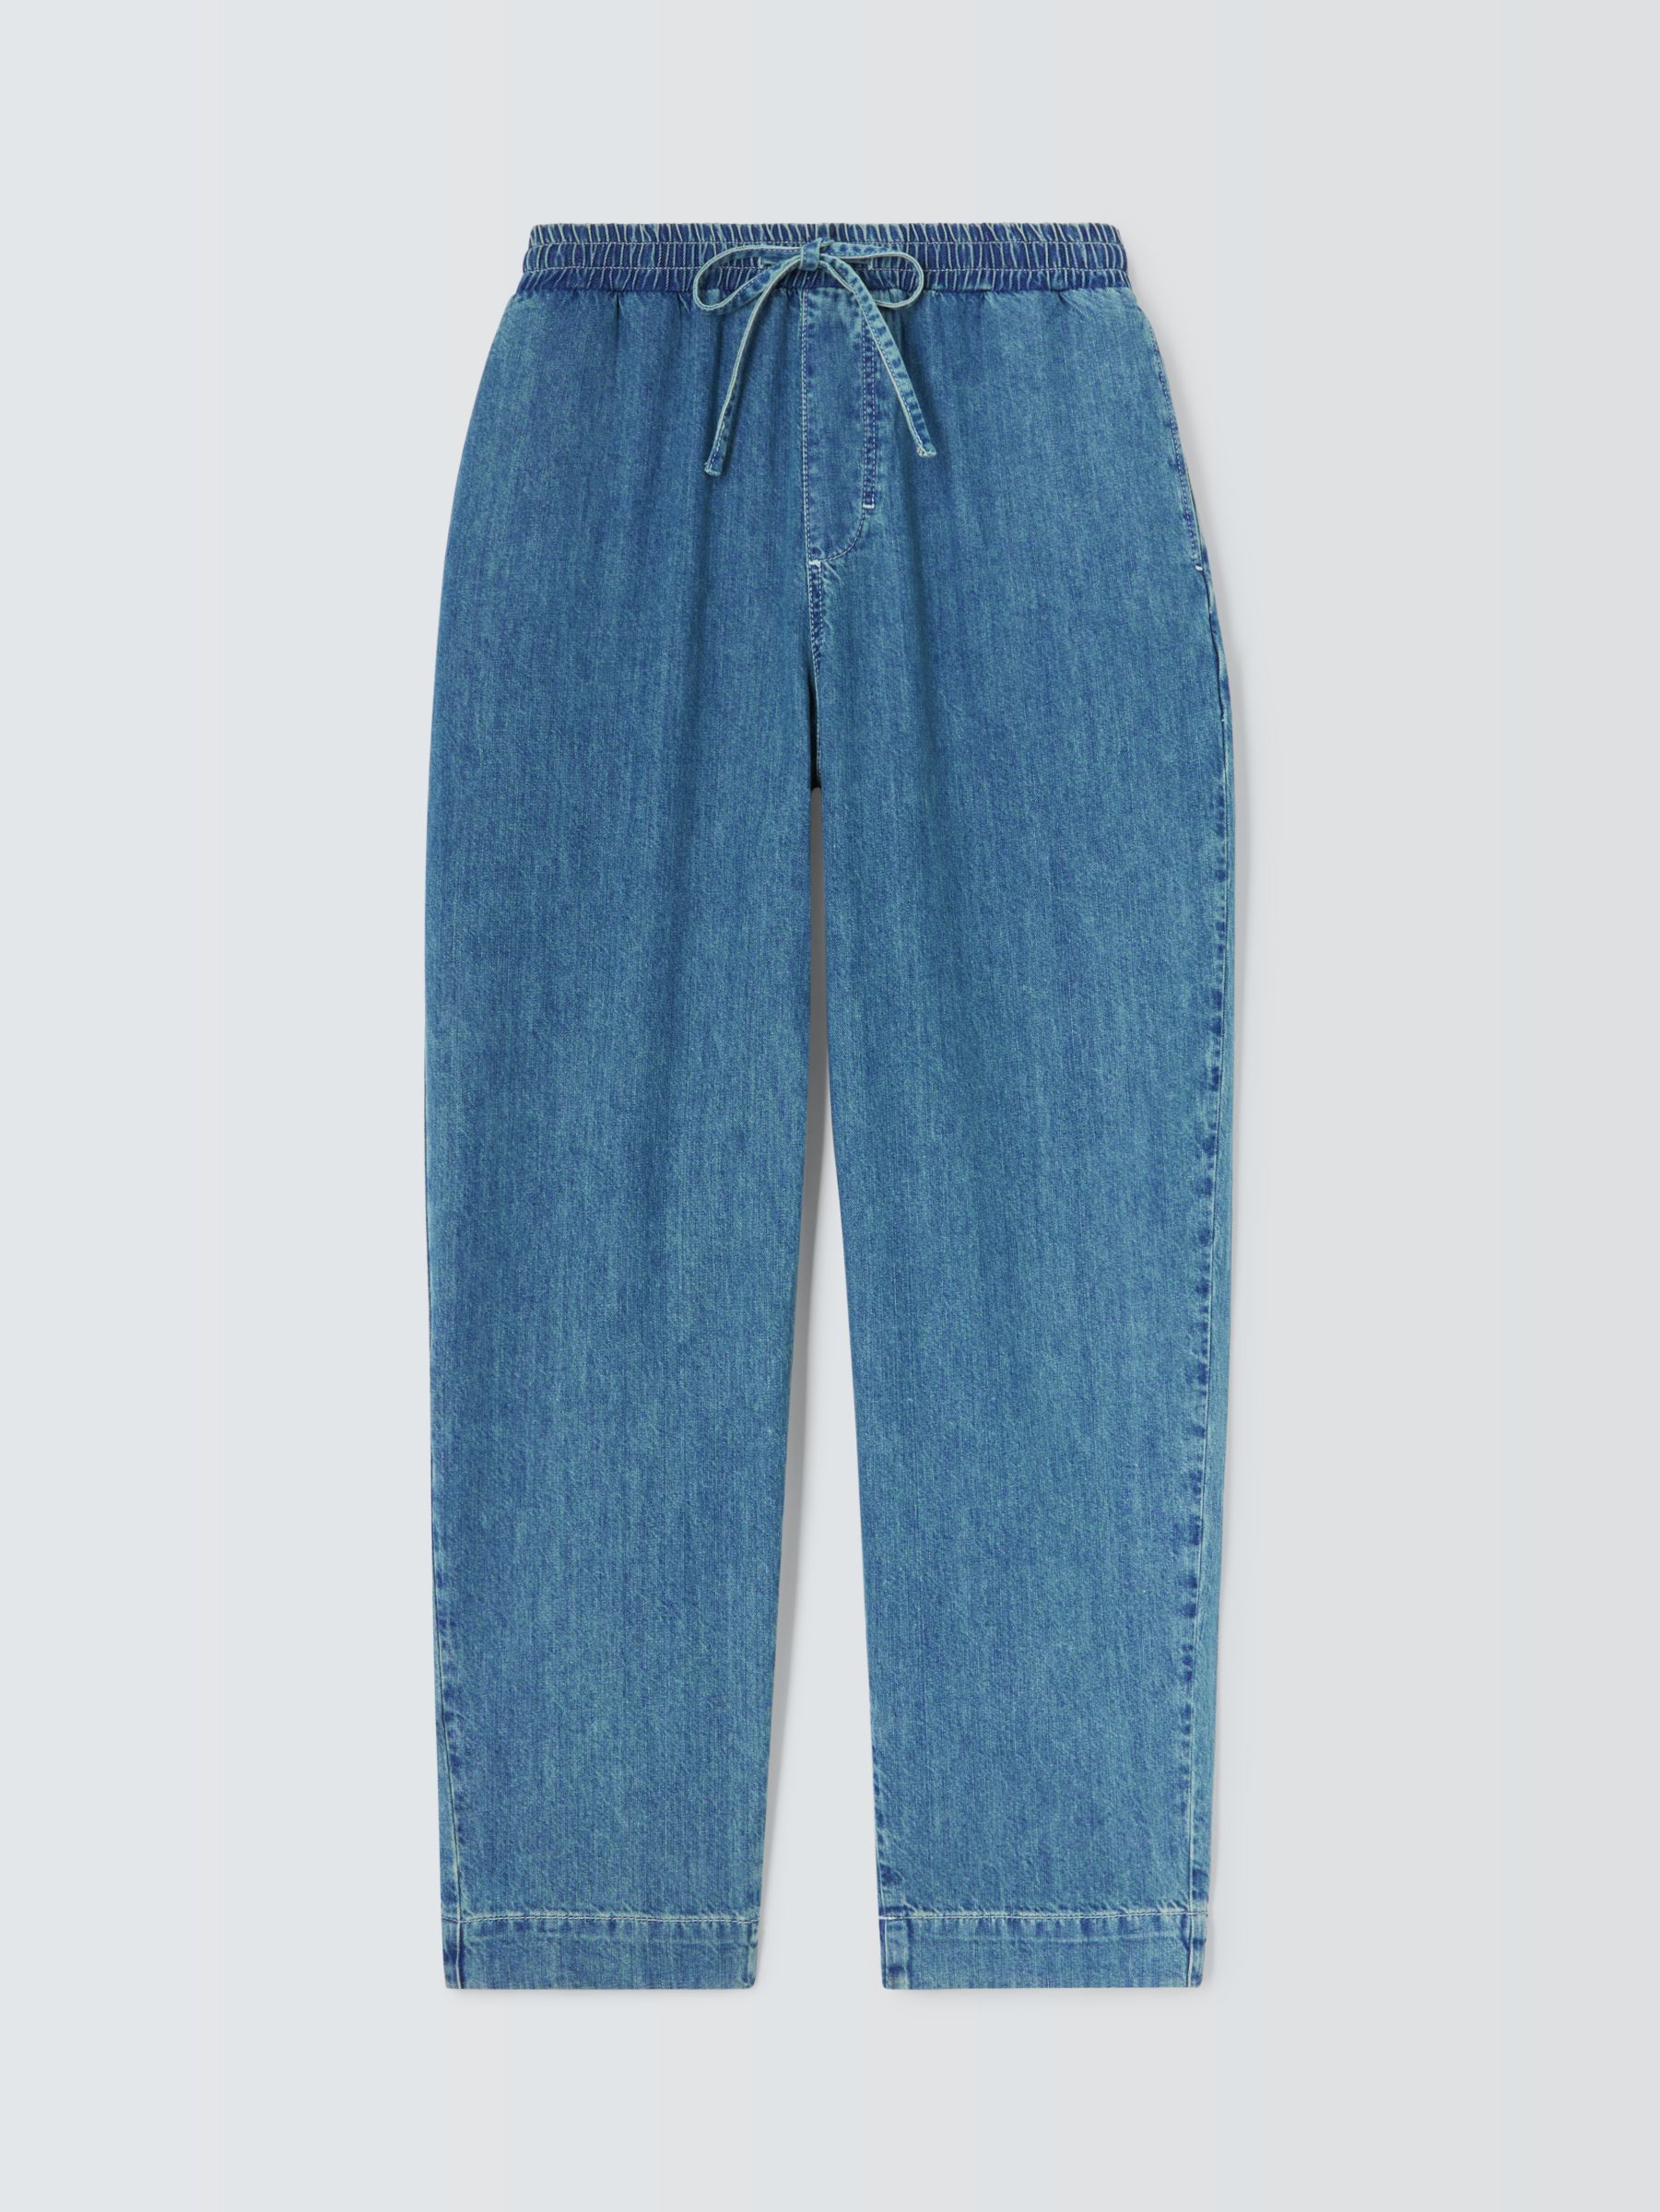 John Lewis Drawstring Jeans, Mid Wash, 10